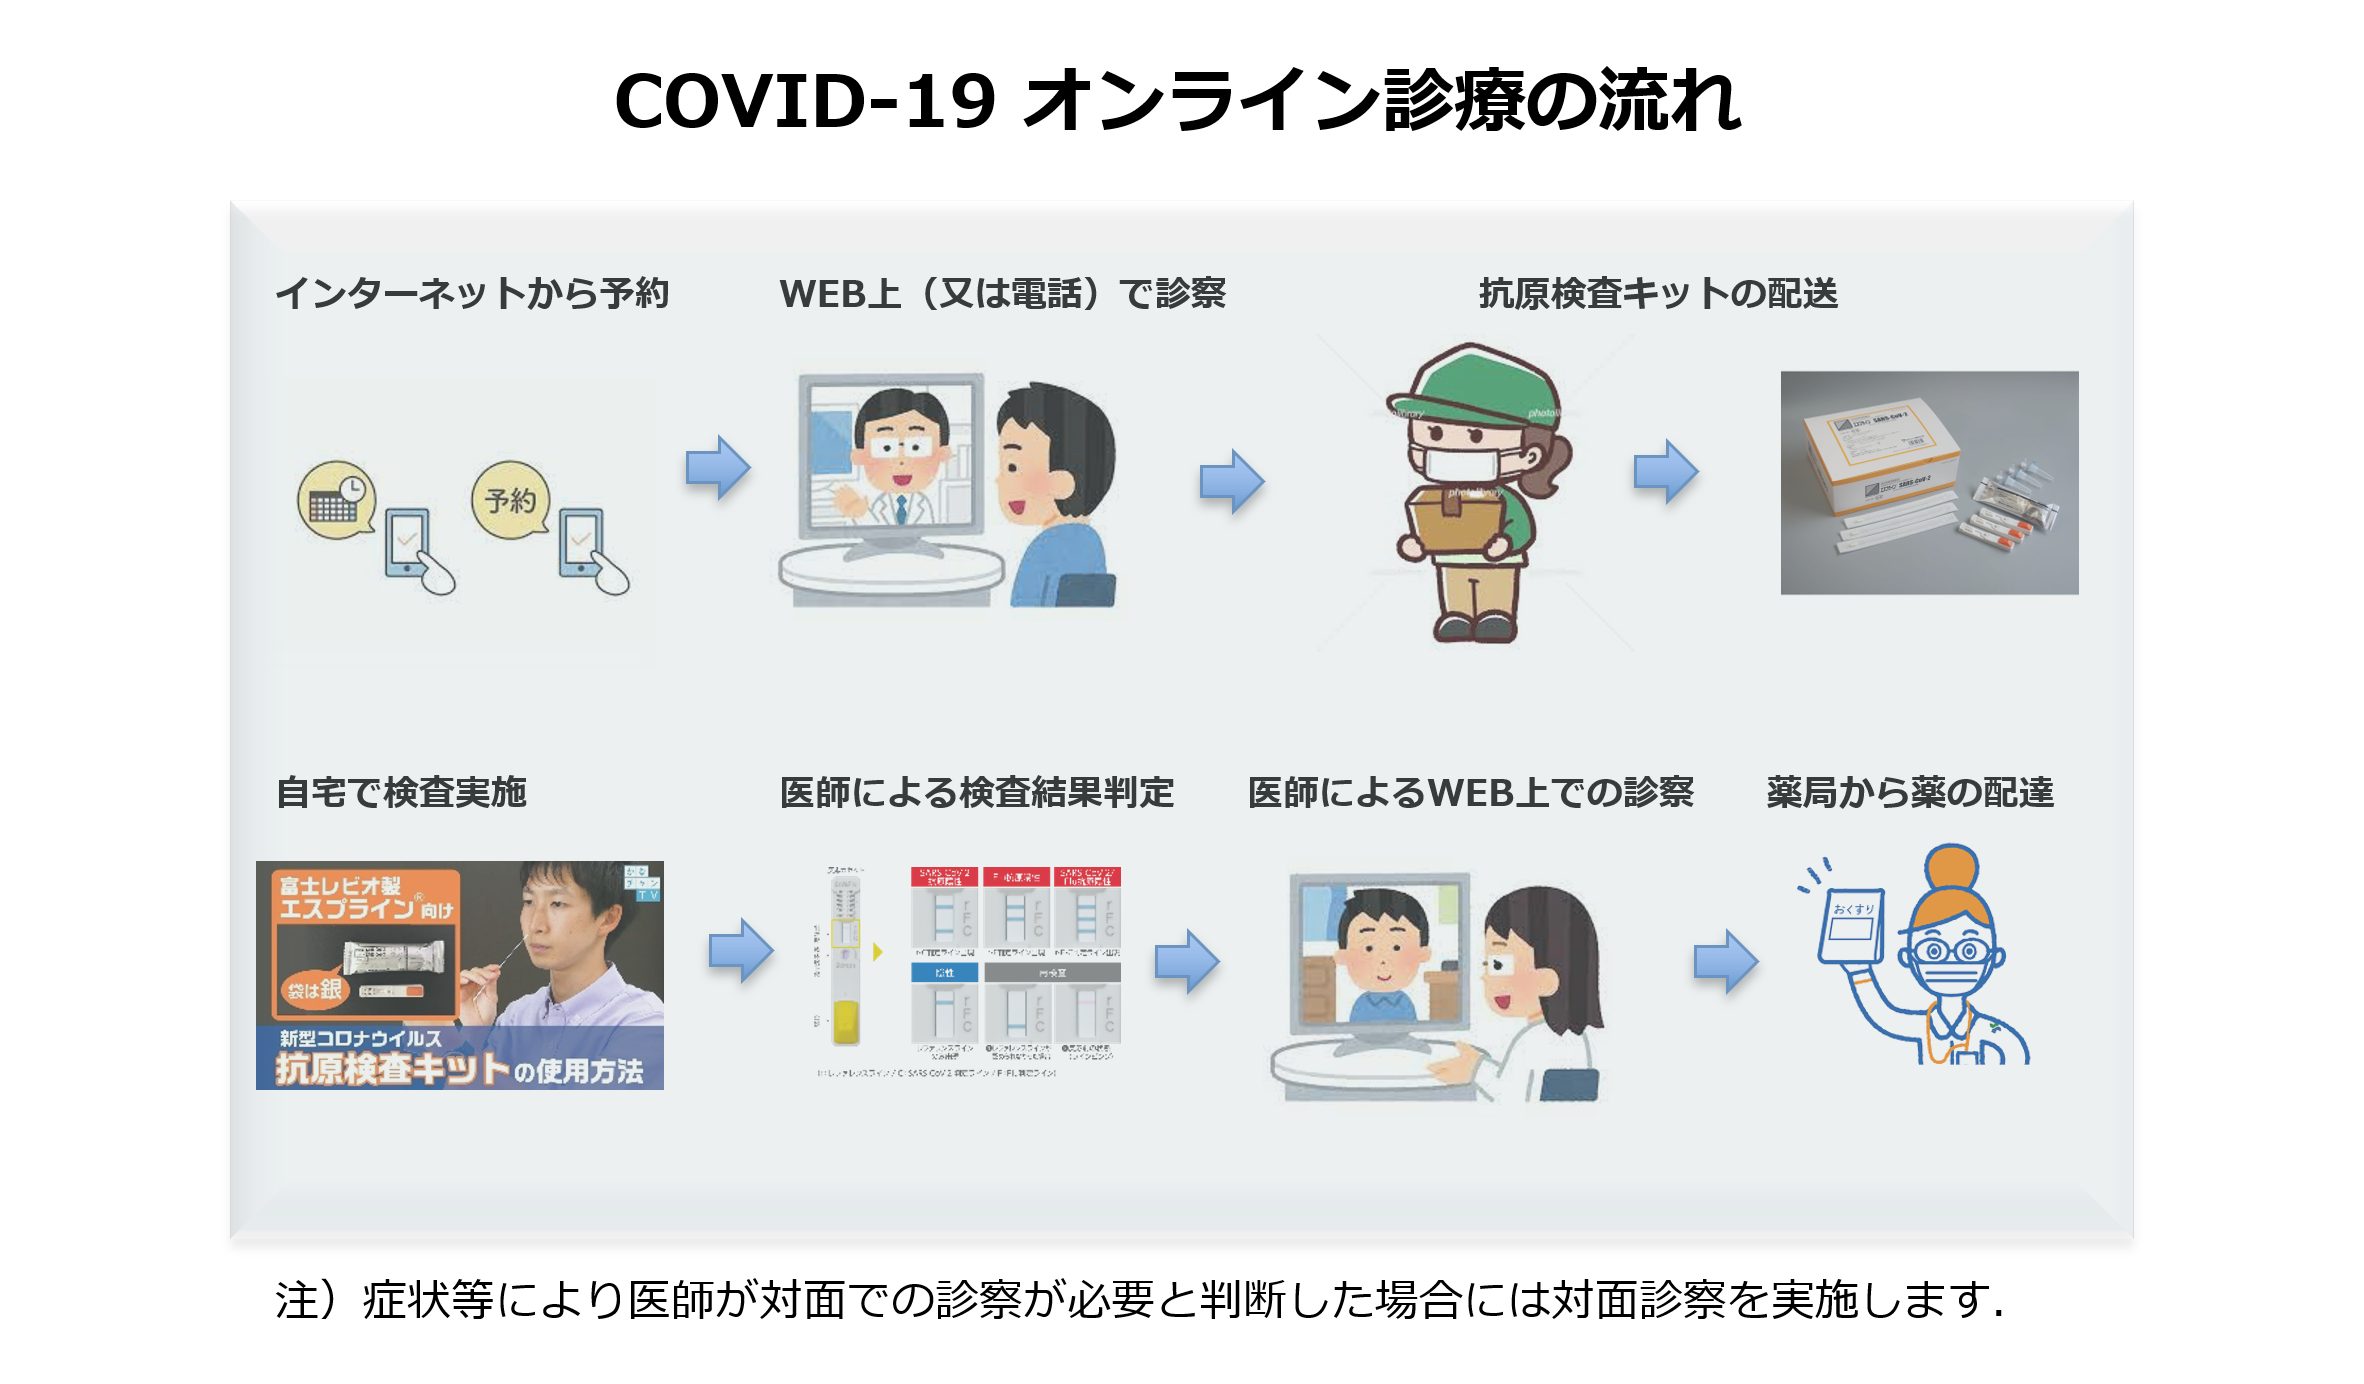 COVID-19 オンライン診療の流れ（イメージ図）